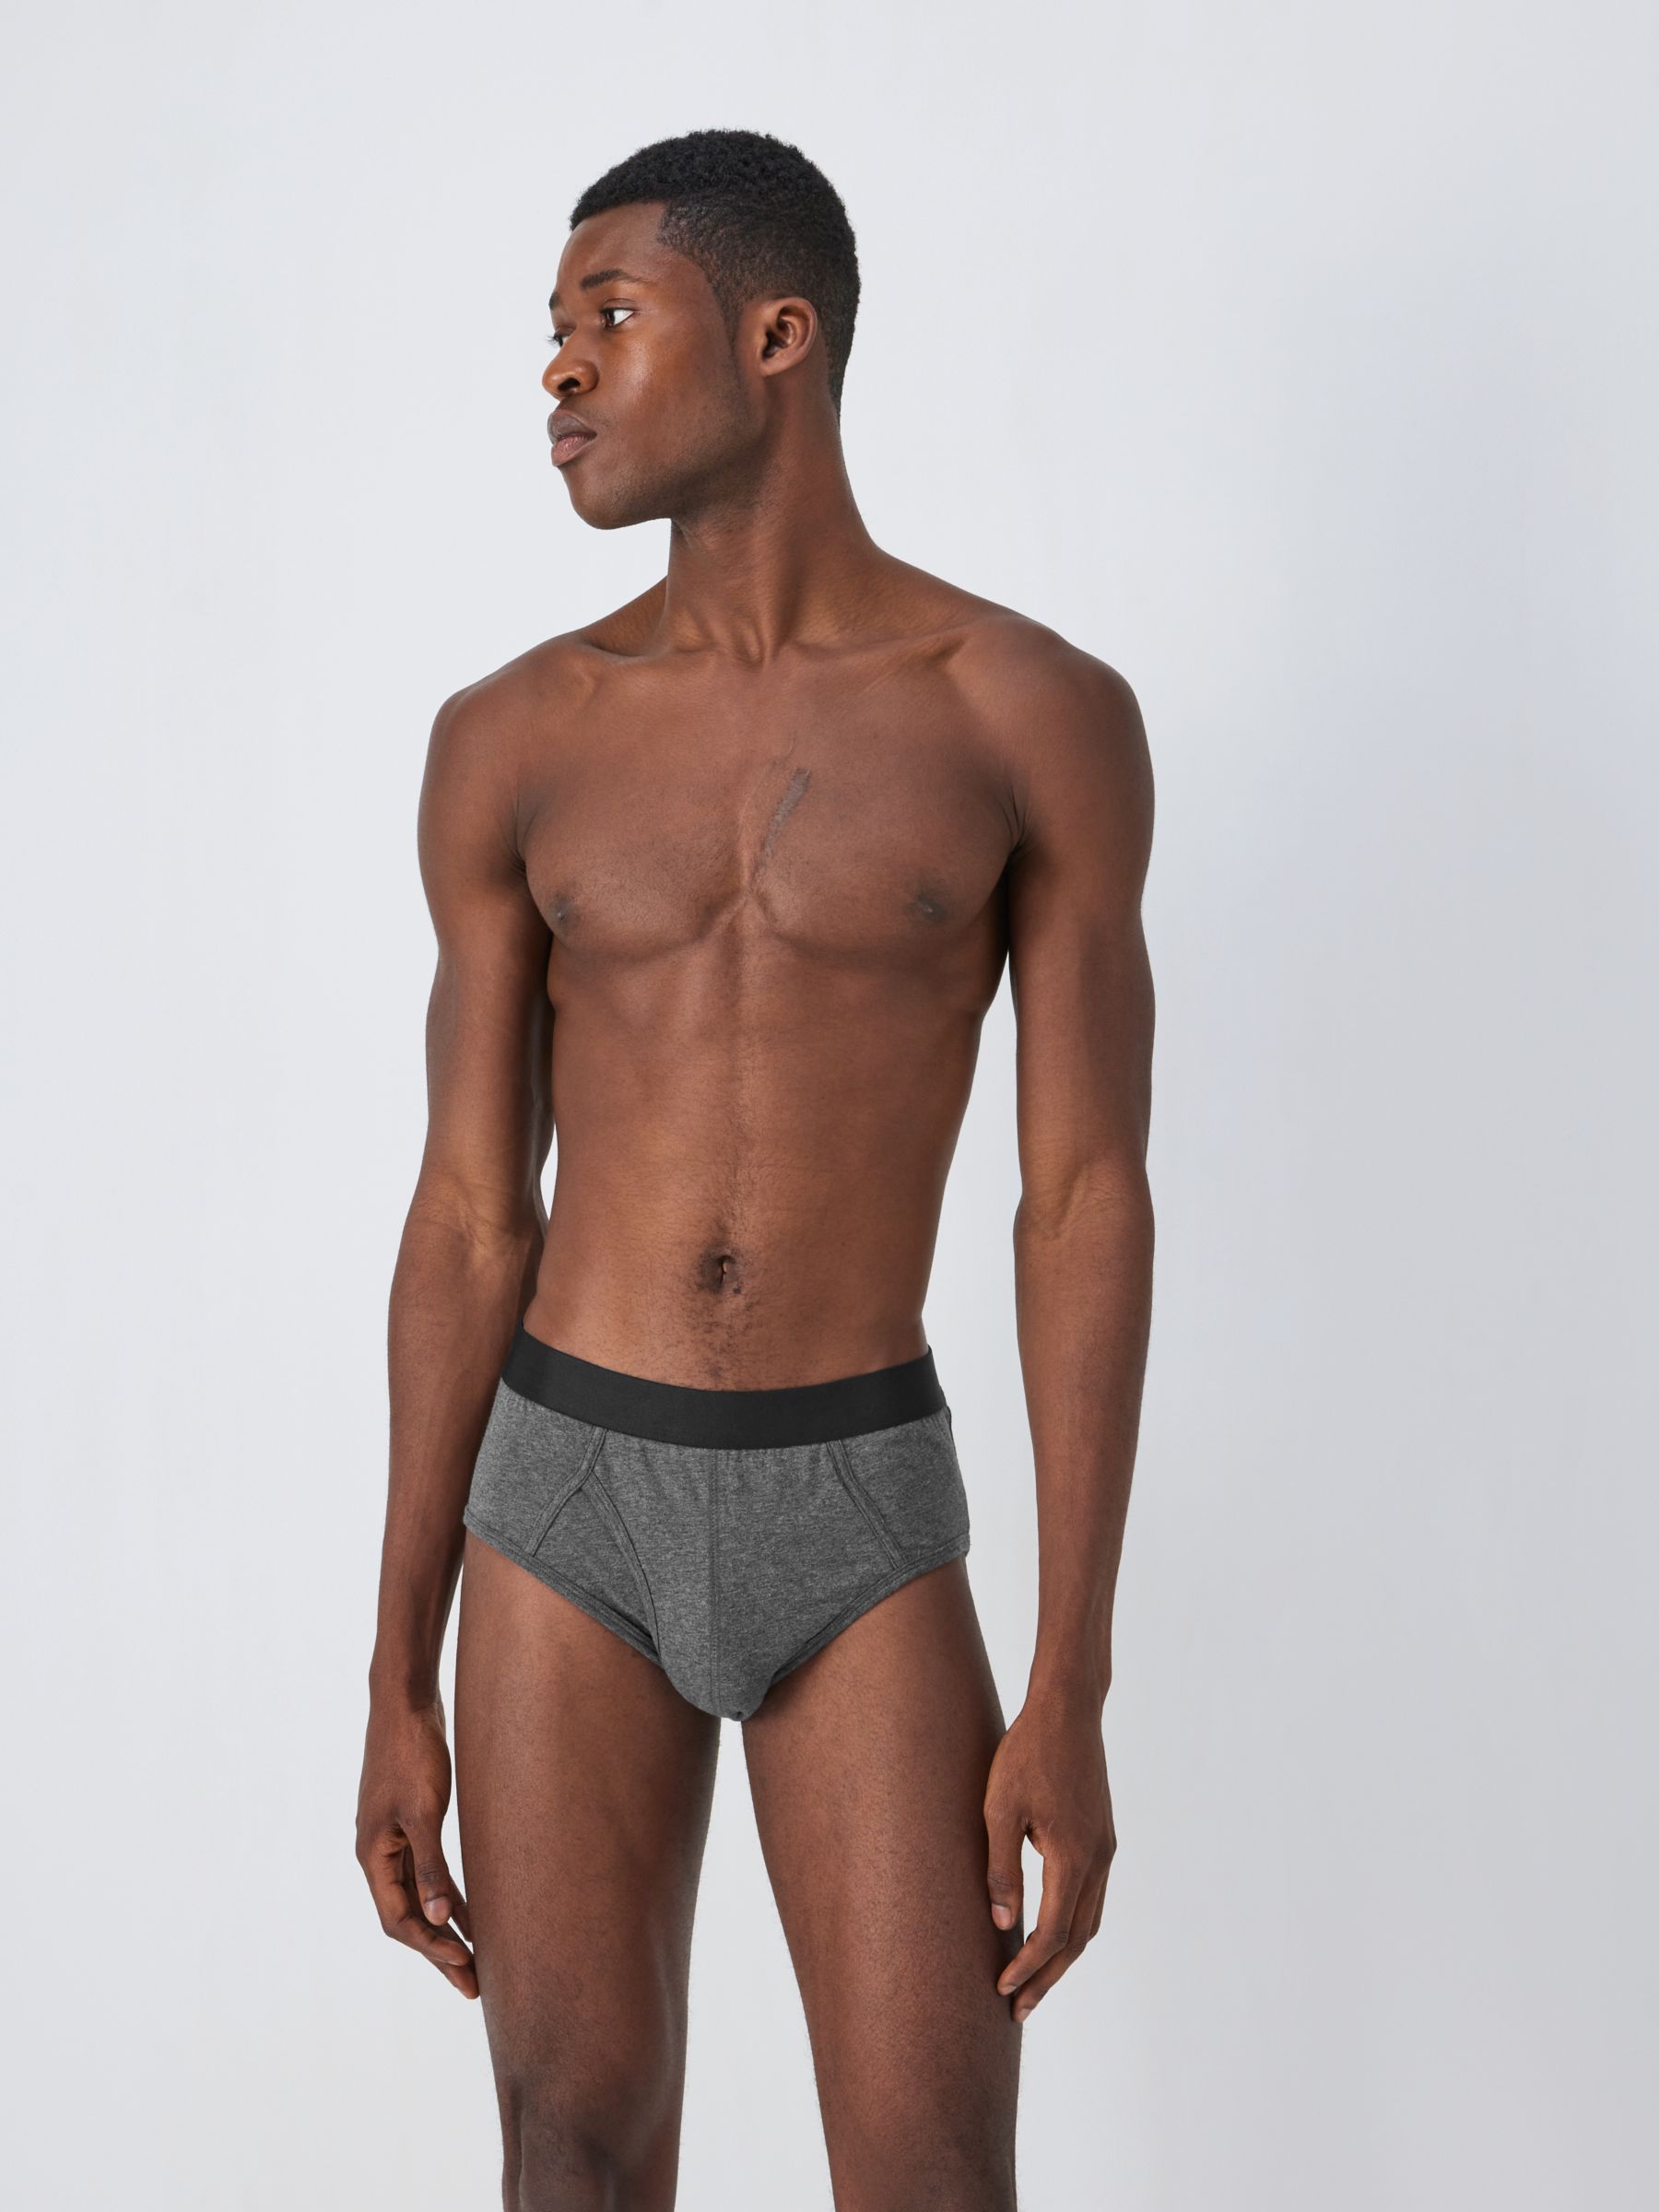 Buy Organic Men's Underwear Online